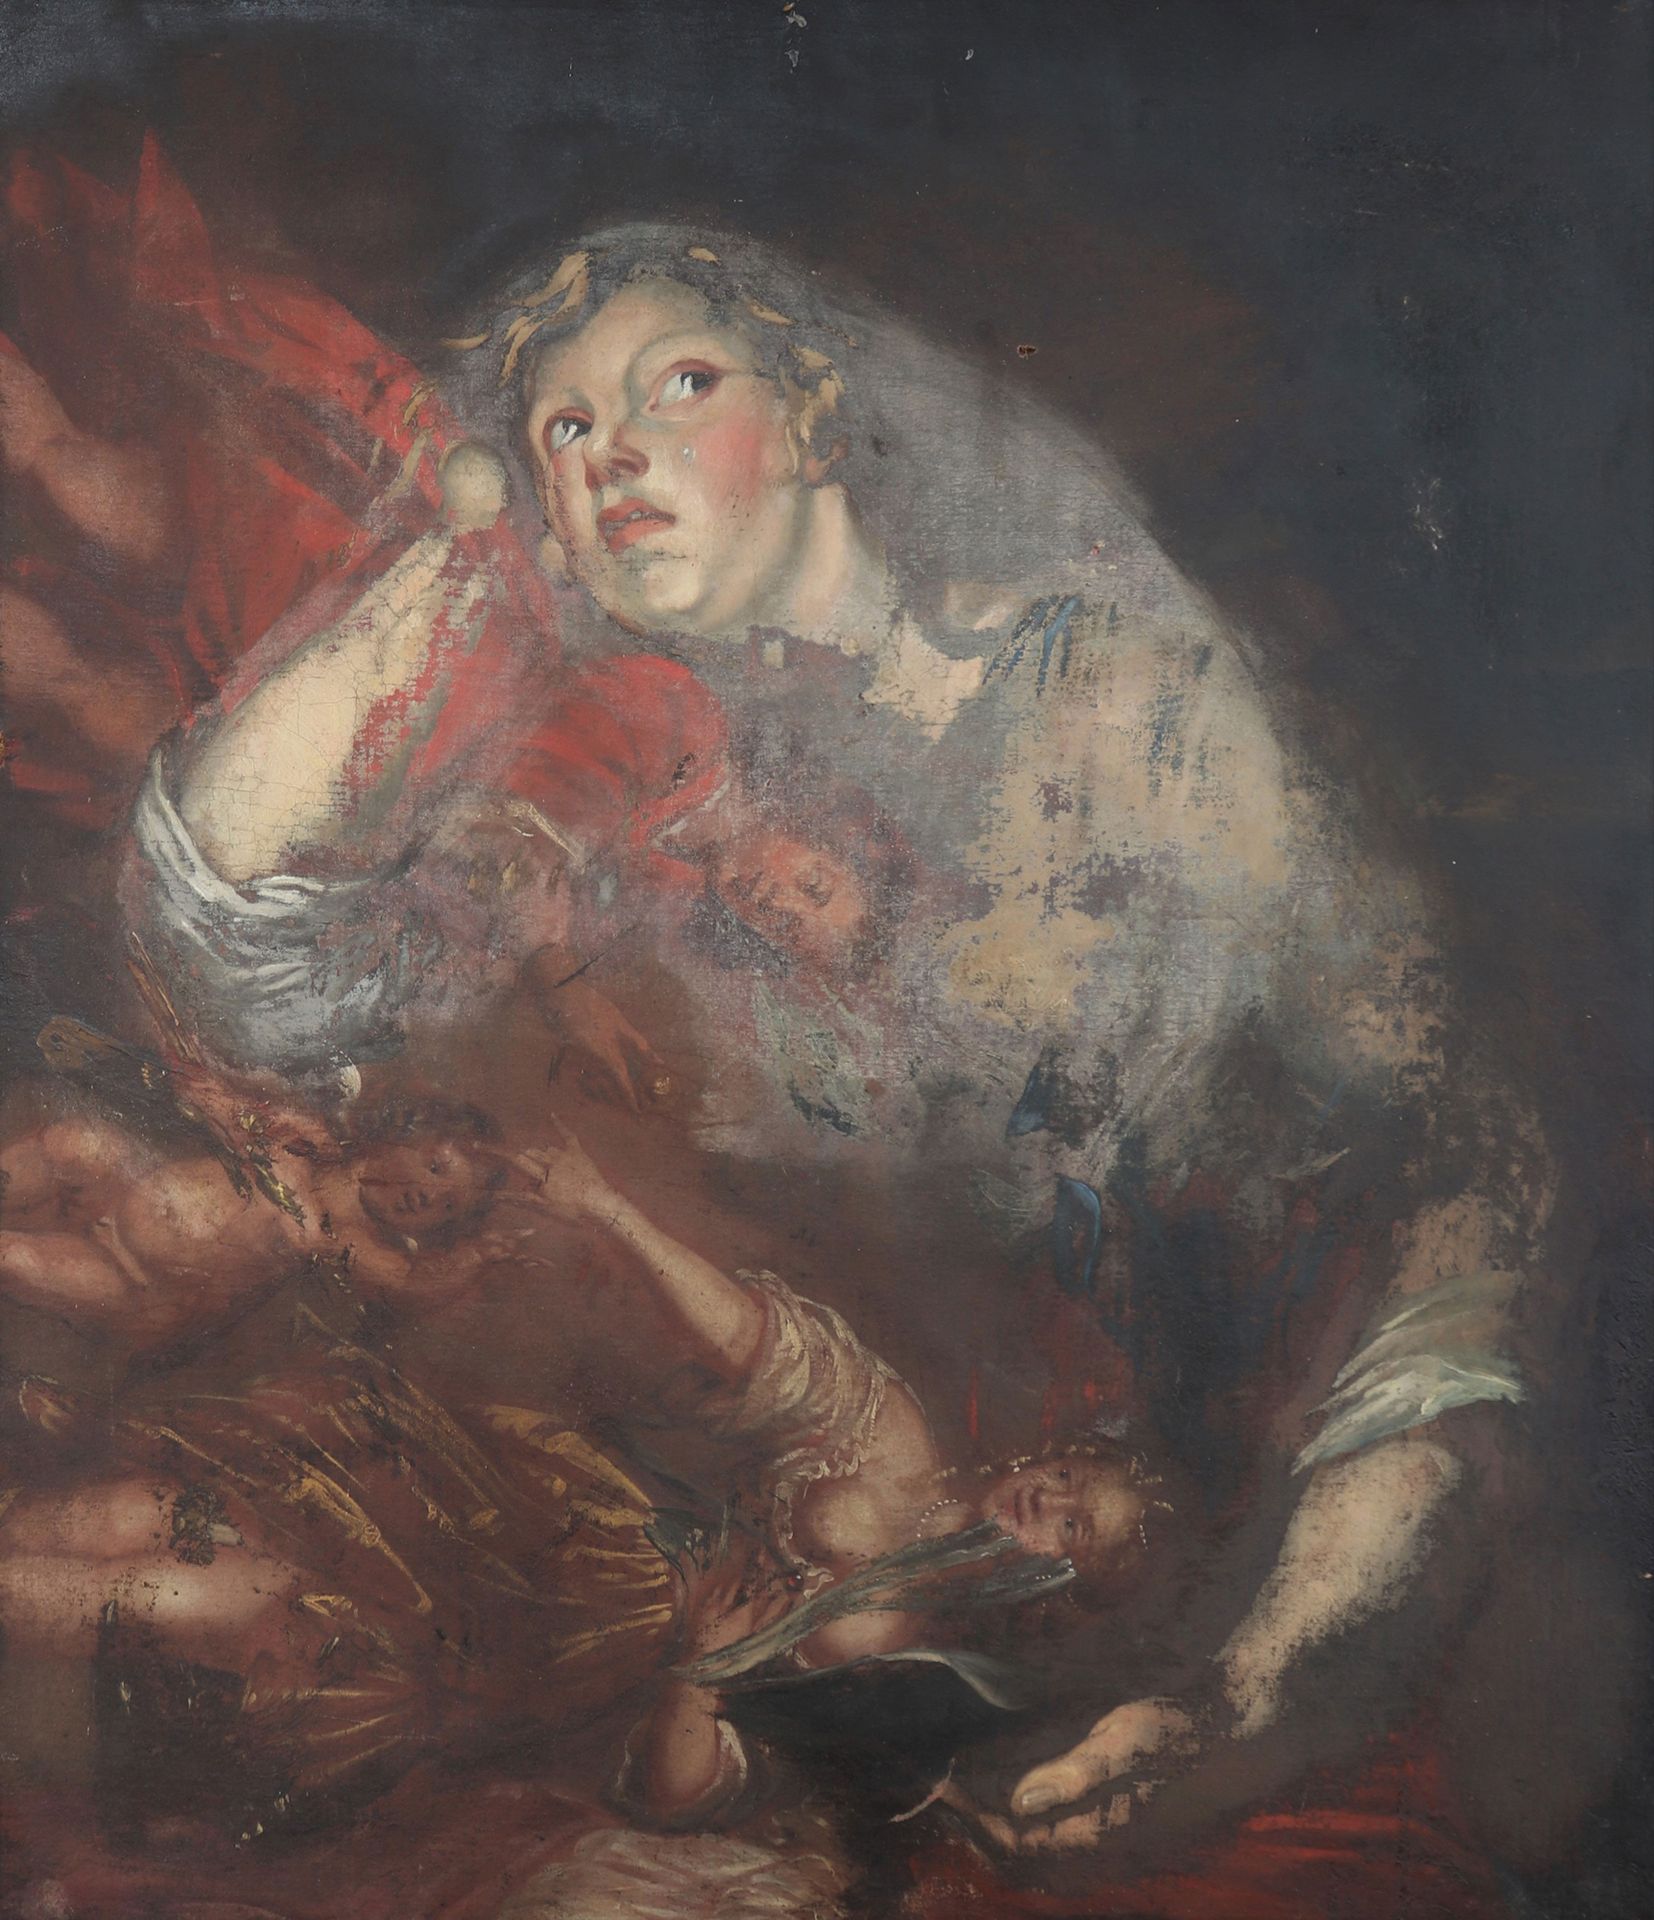 Huile sur toile 17ème école de Rubens Óleo sobre lienzo Escuela de Rubens XVII
D&hellip;